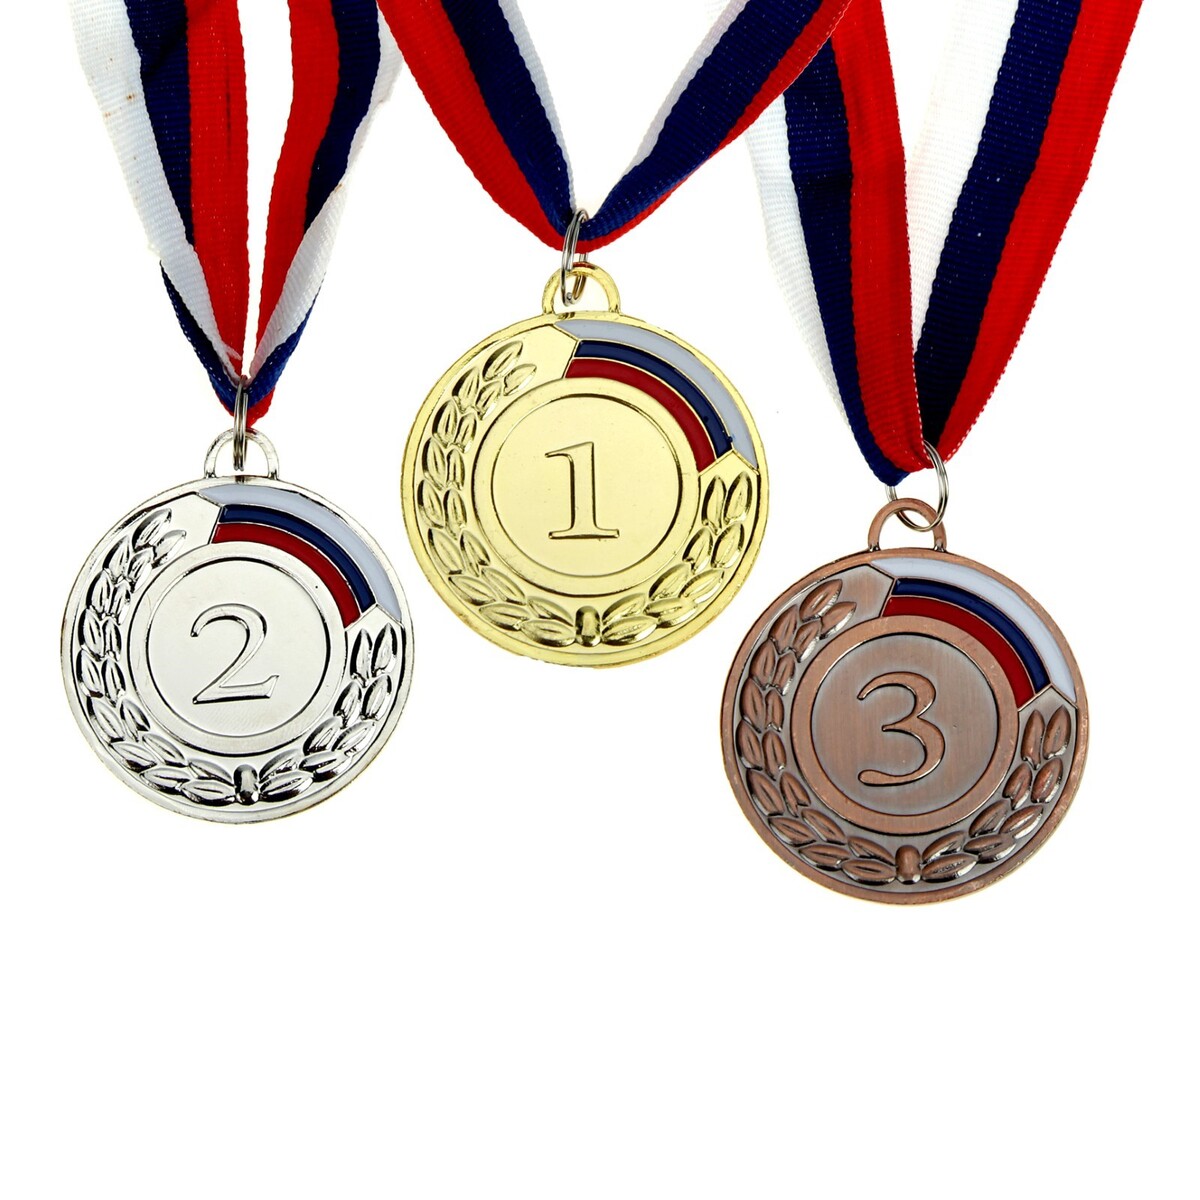 Медаль призовая 002 диам 5 см. 1 место, триколор. цвет зол. с лентой медаль призовая 013 диам 5 см 2 место триколор сер с лентой